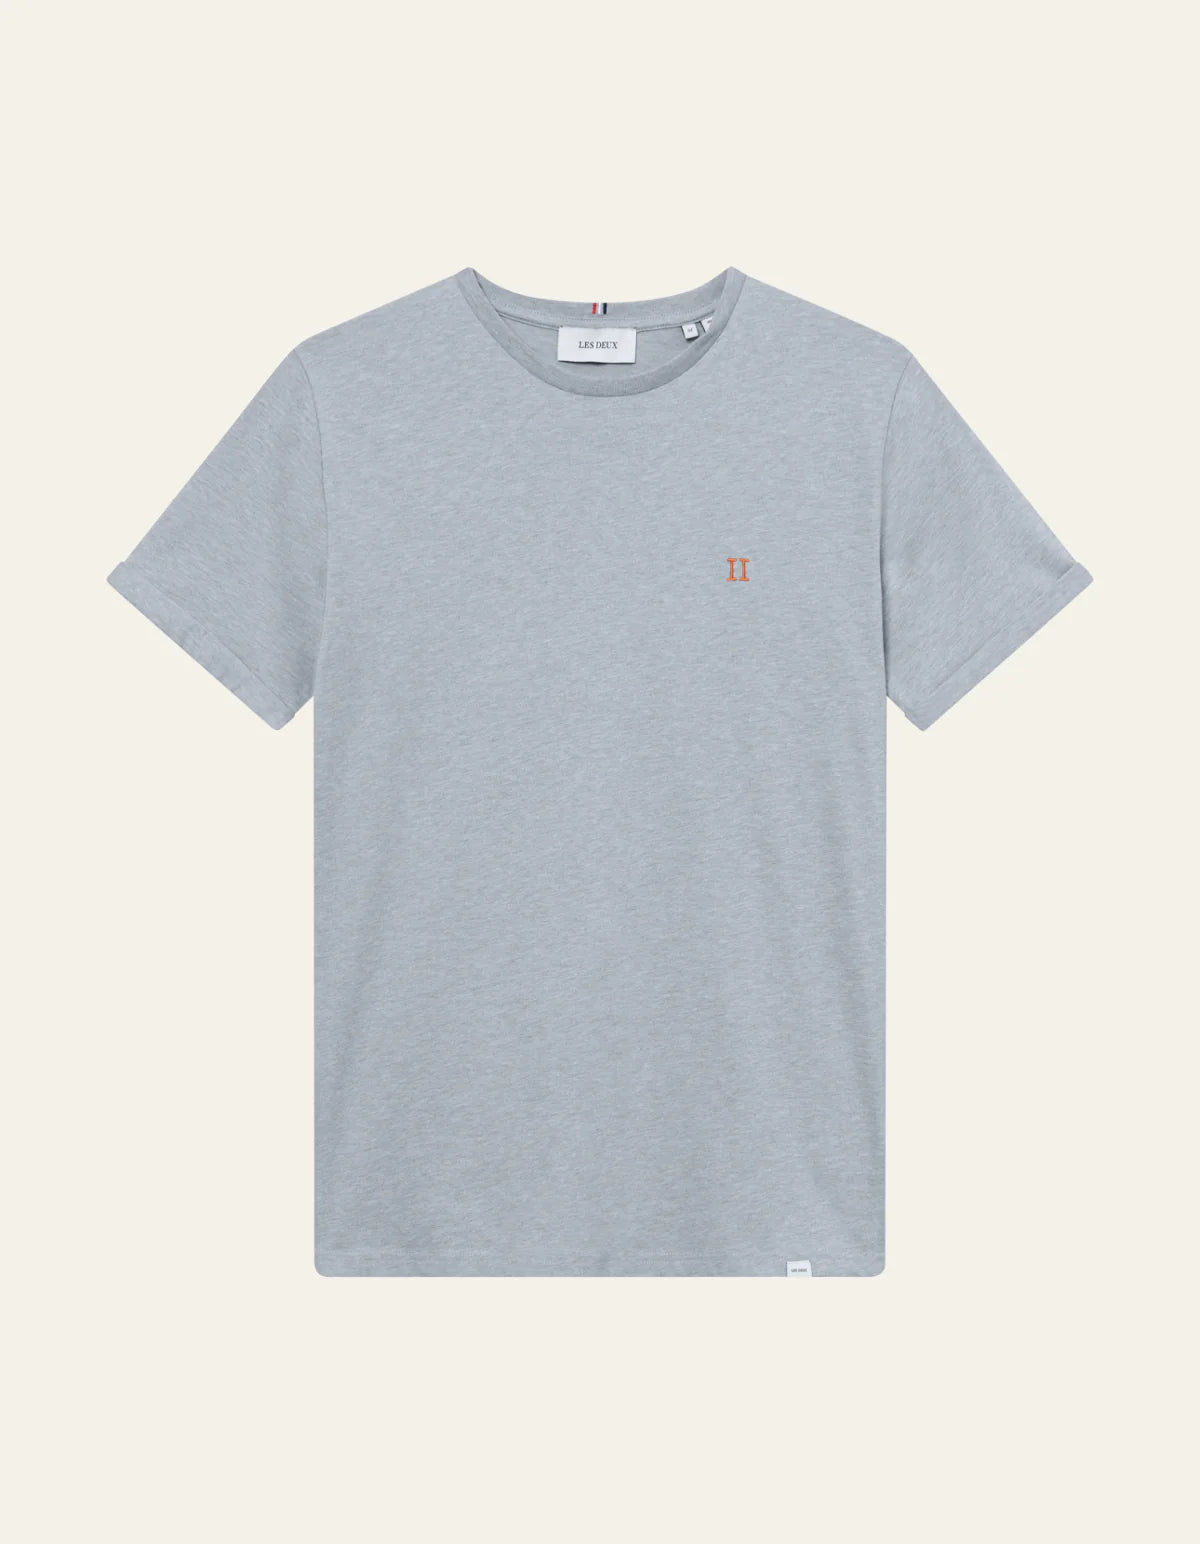 Les Deux Norregaard T-shirt Summer Sky Melange/Orange